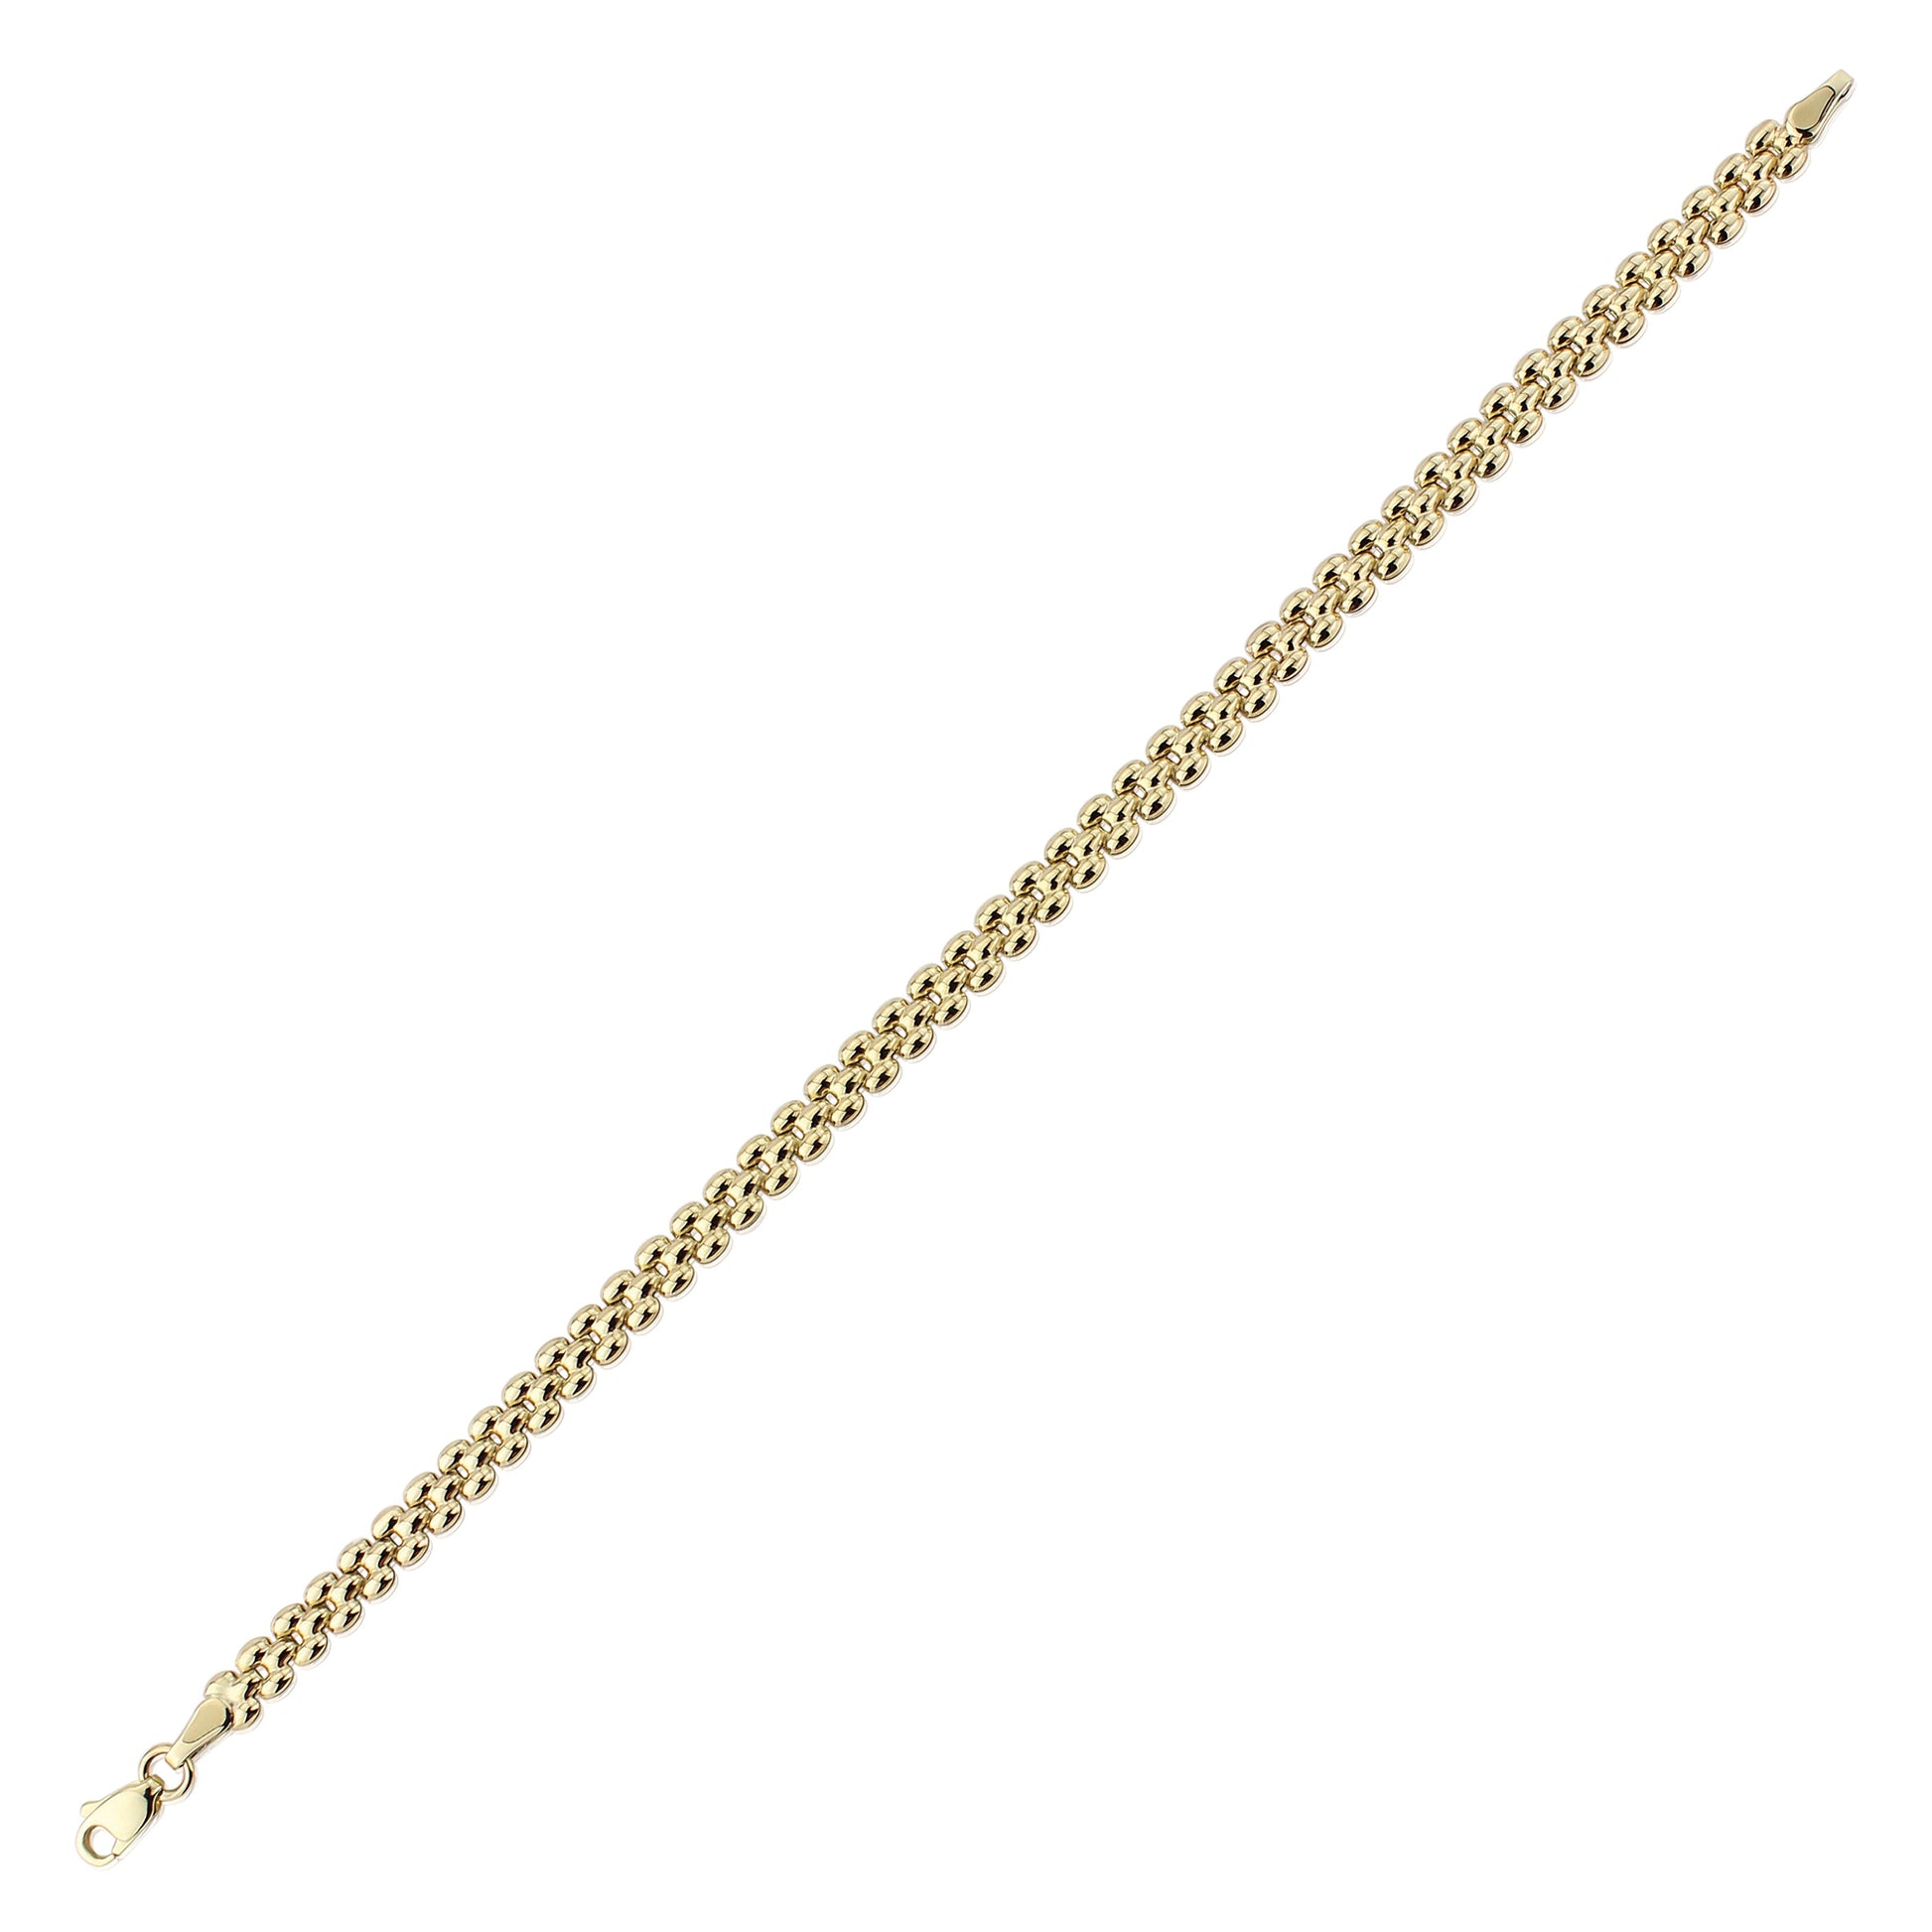 9ct Gold  Gate Style Brick Link Bracelet 4mm 7.25" - CNNR02970